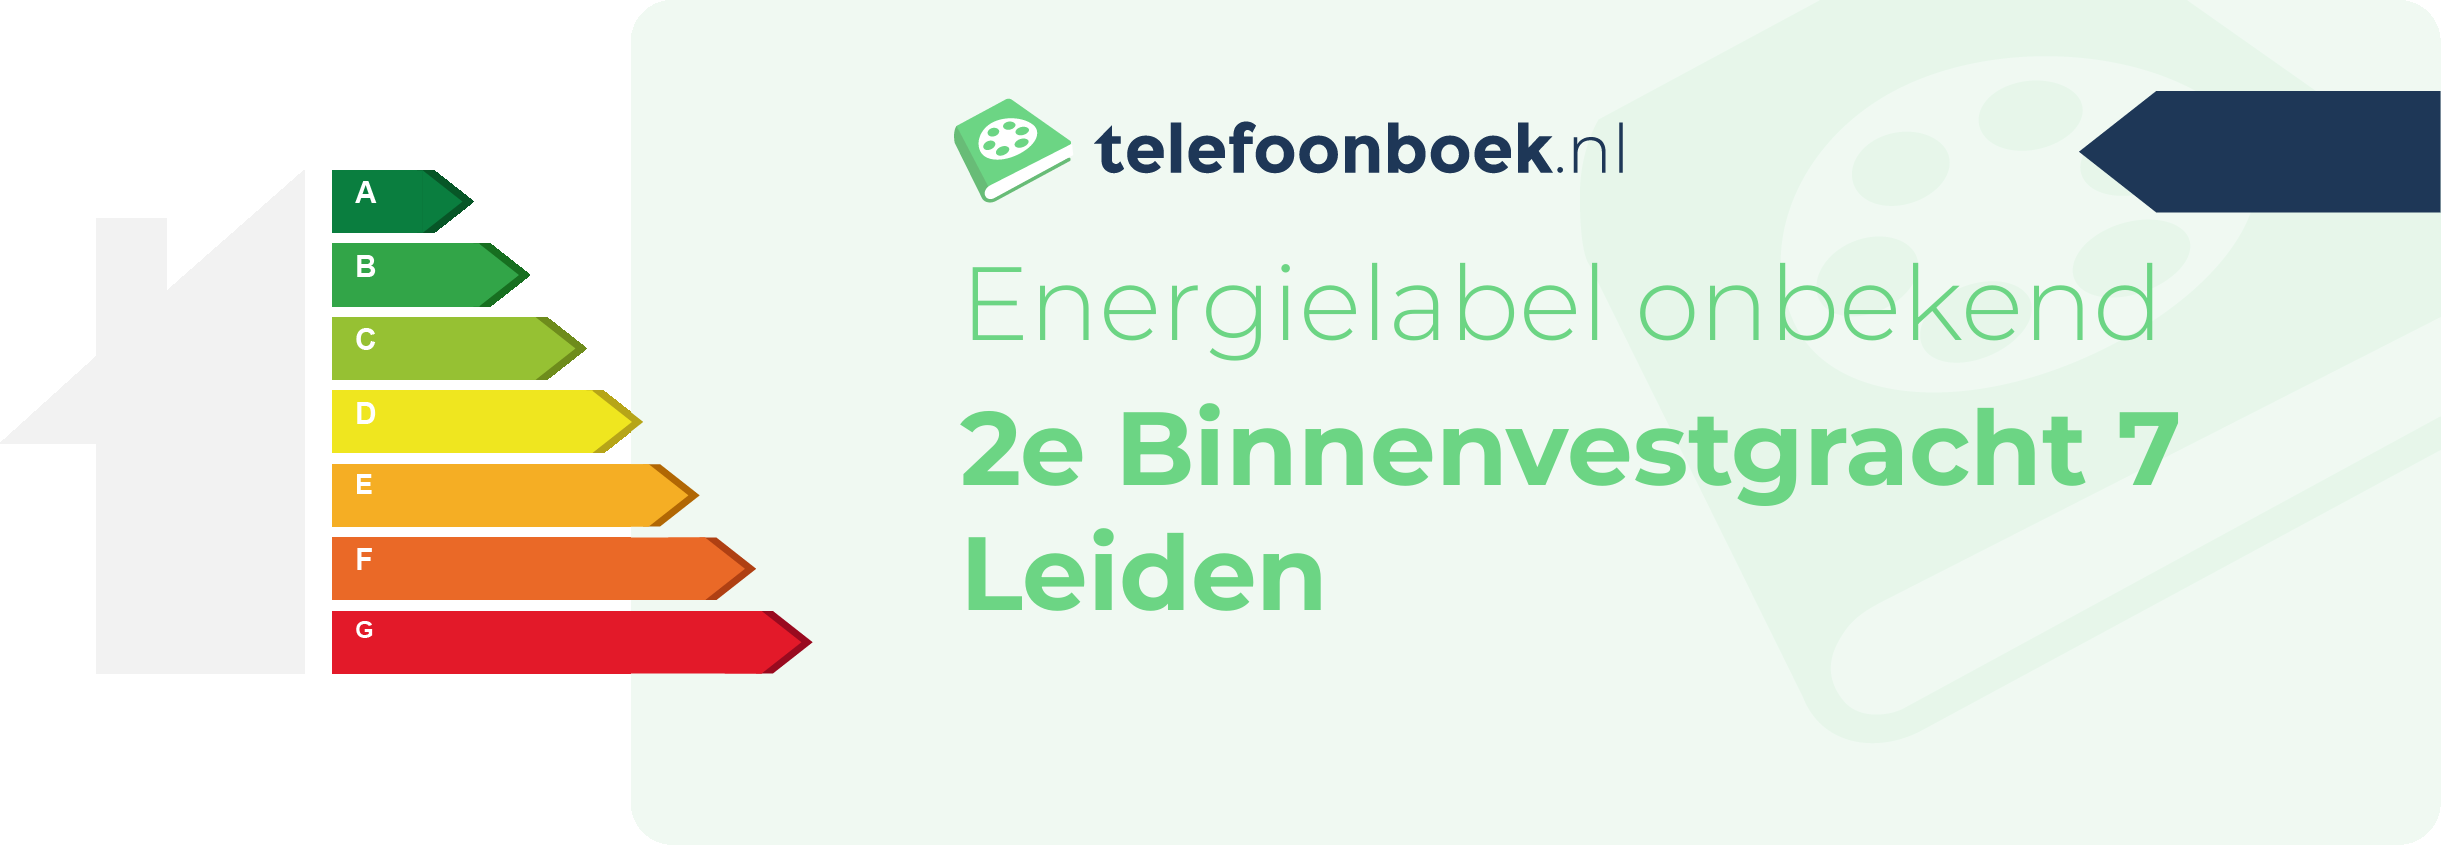 Energielabel 2e Binnenvestgracht 7 Leiden